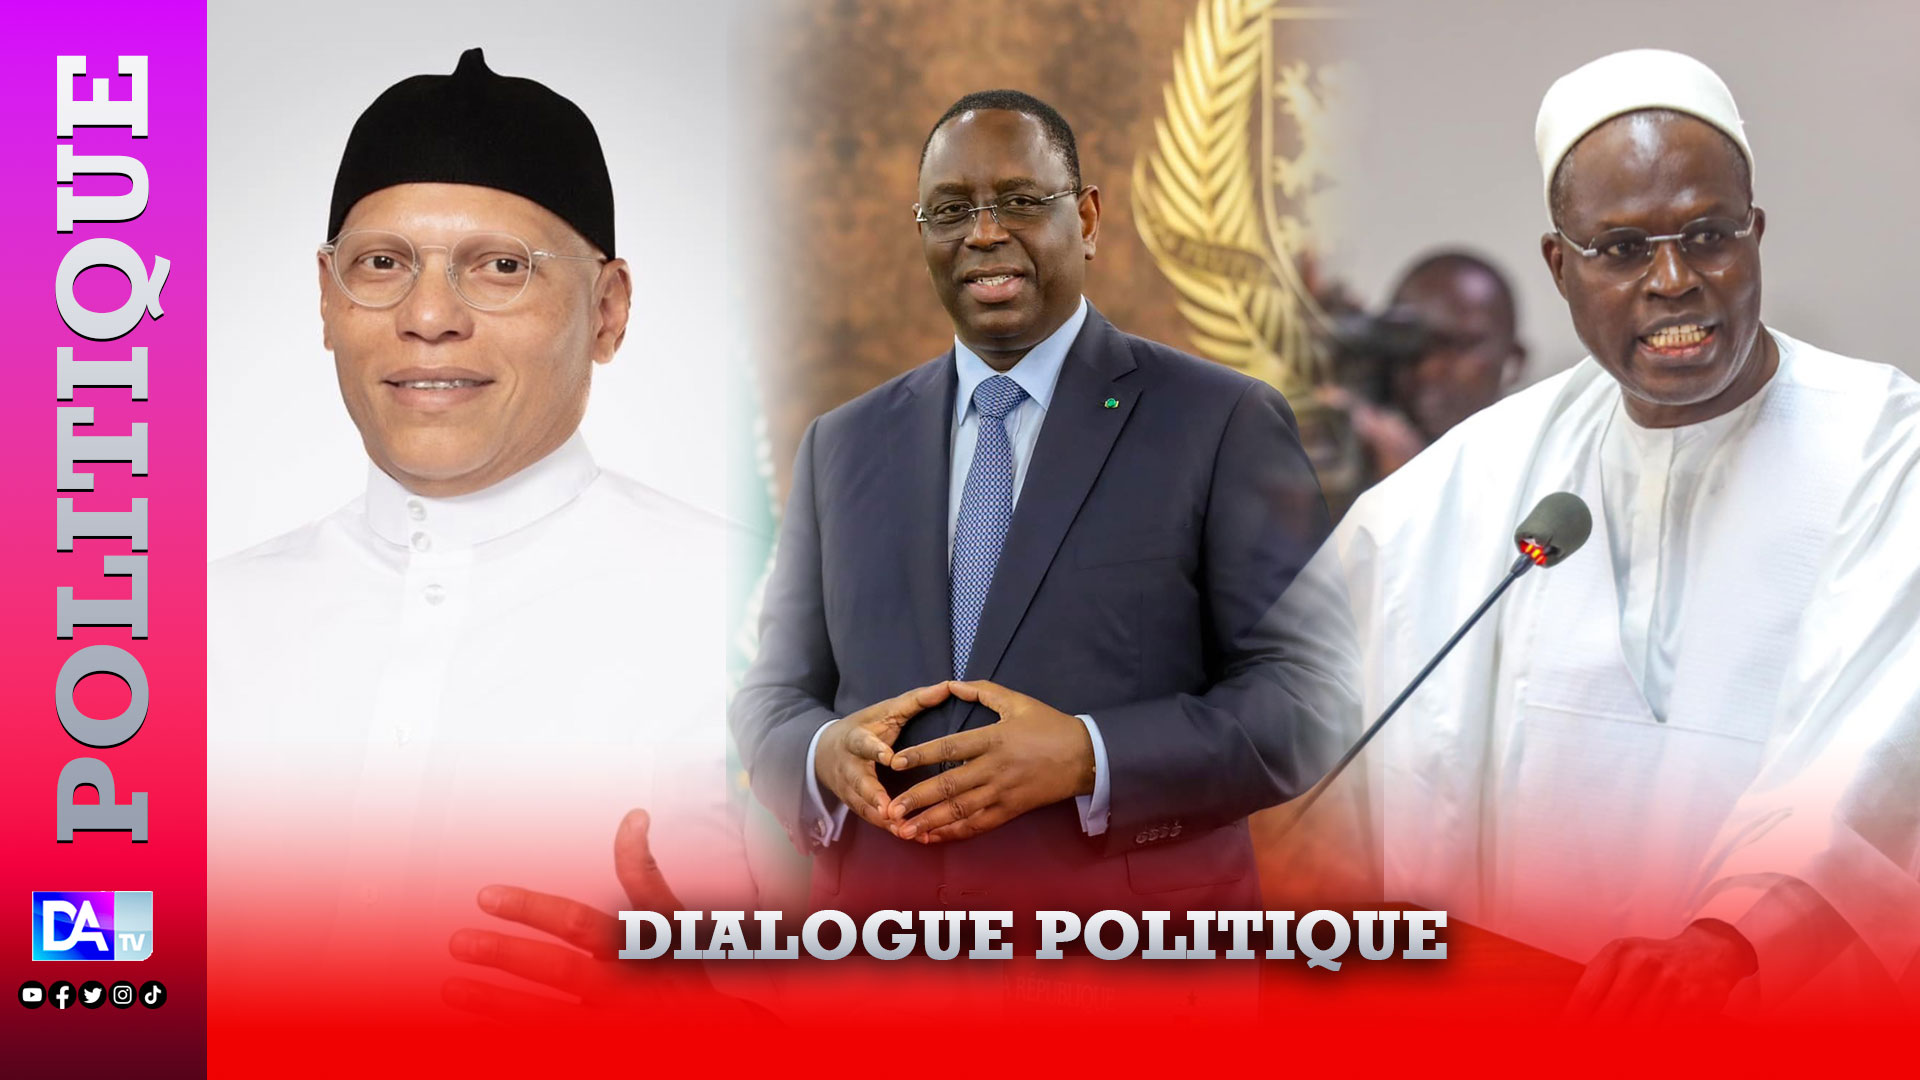 Dialogue politique: la question liée aux candidatures de Khalifa Sall, Karim Wade et Macky Sall divisent à moins de 24H de la clôture des travaux